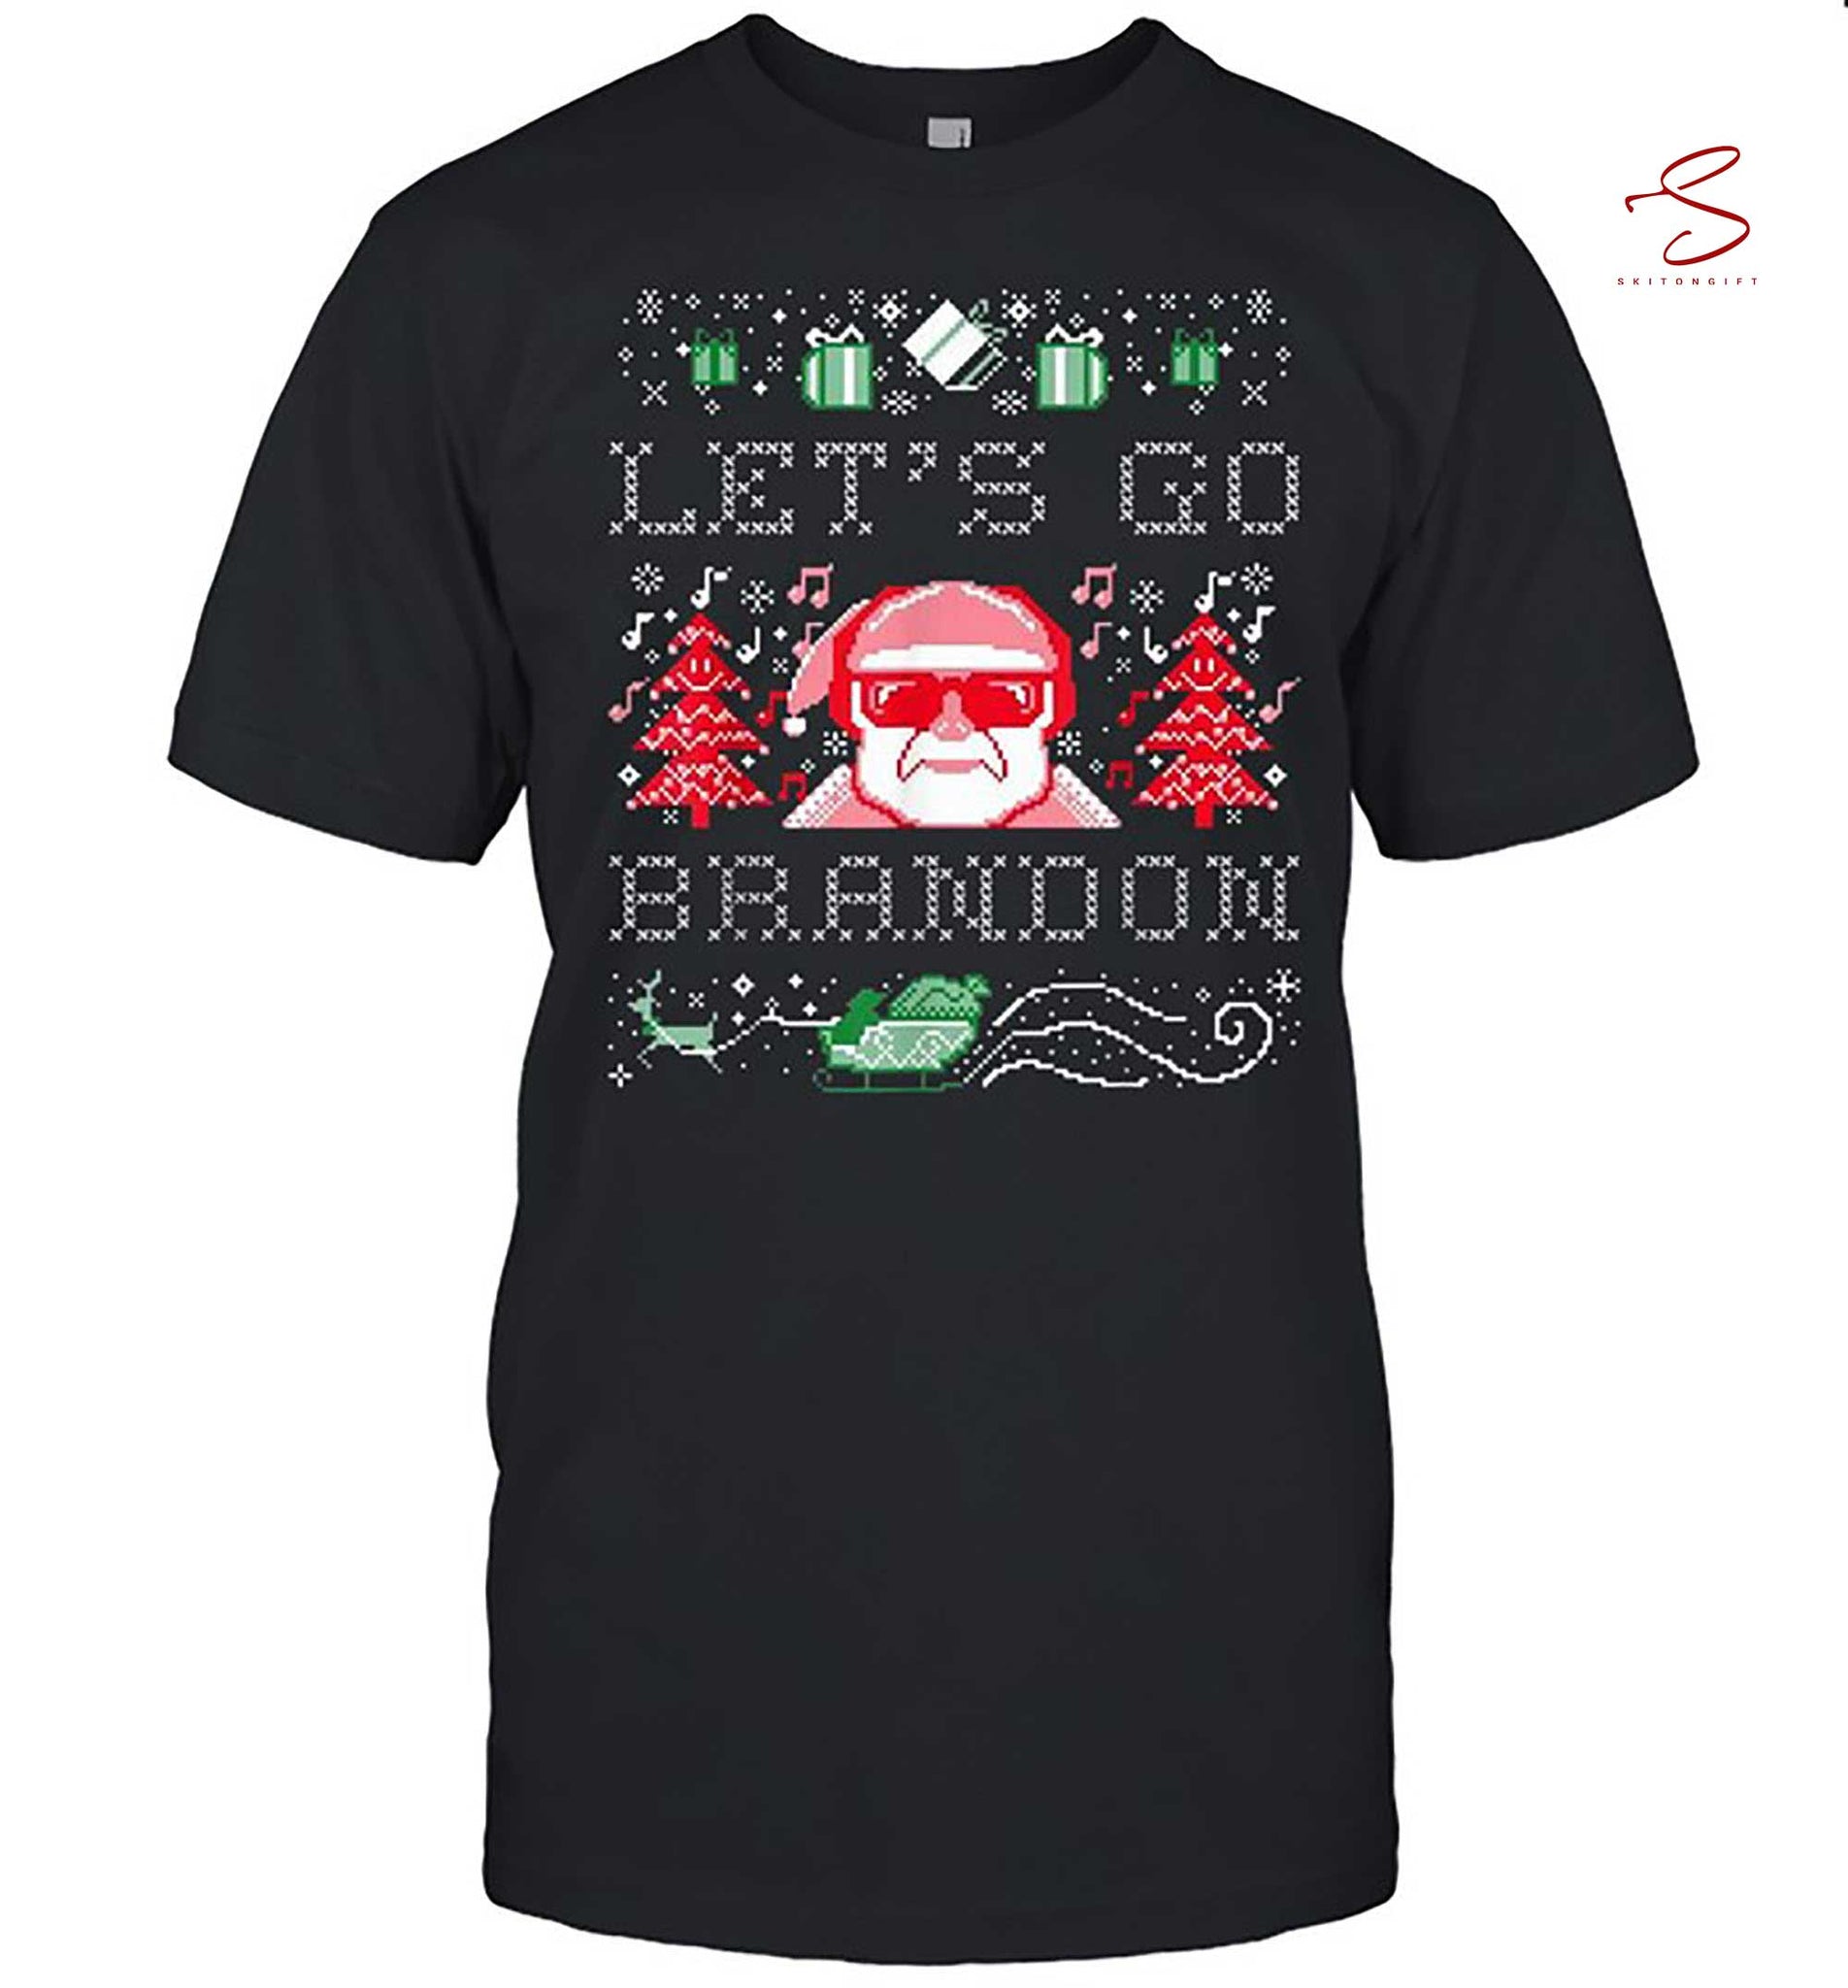 Skitongift Santa Claus Lets Go Ugly Christmas Shirt